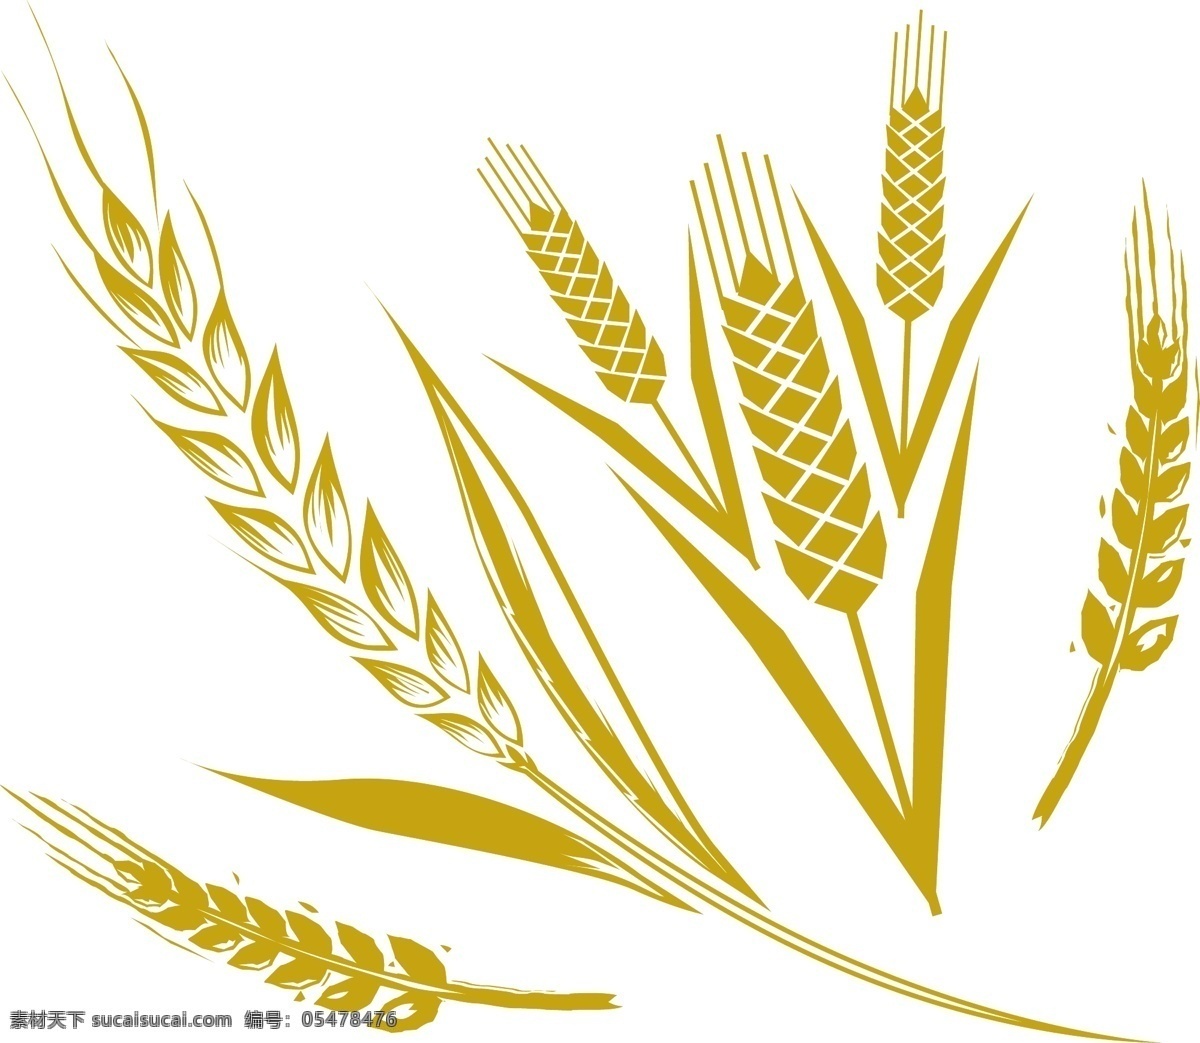 金色小麦 小麦 黄色 麦穗 矢量素材 设计素材